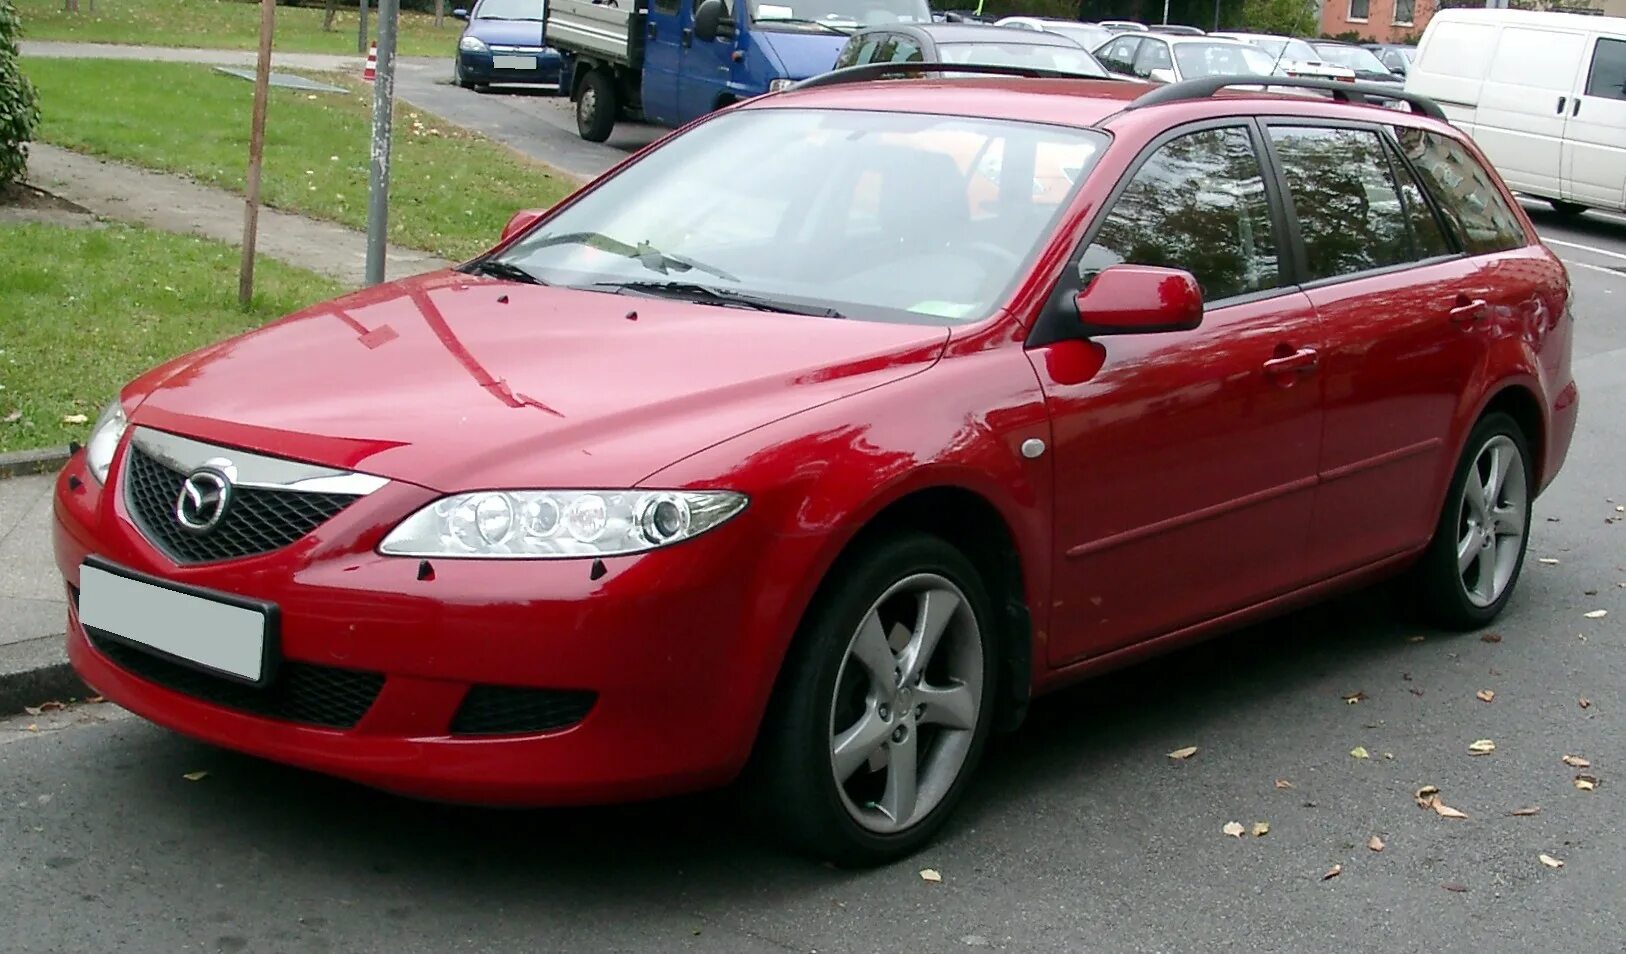 Mazda 6 2007. Мазда 6 2006 красная. Mazda6 Sport Kombi. Mazda 6 GY 2006. Mazda 6 gg 2007